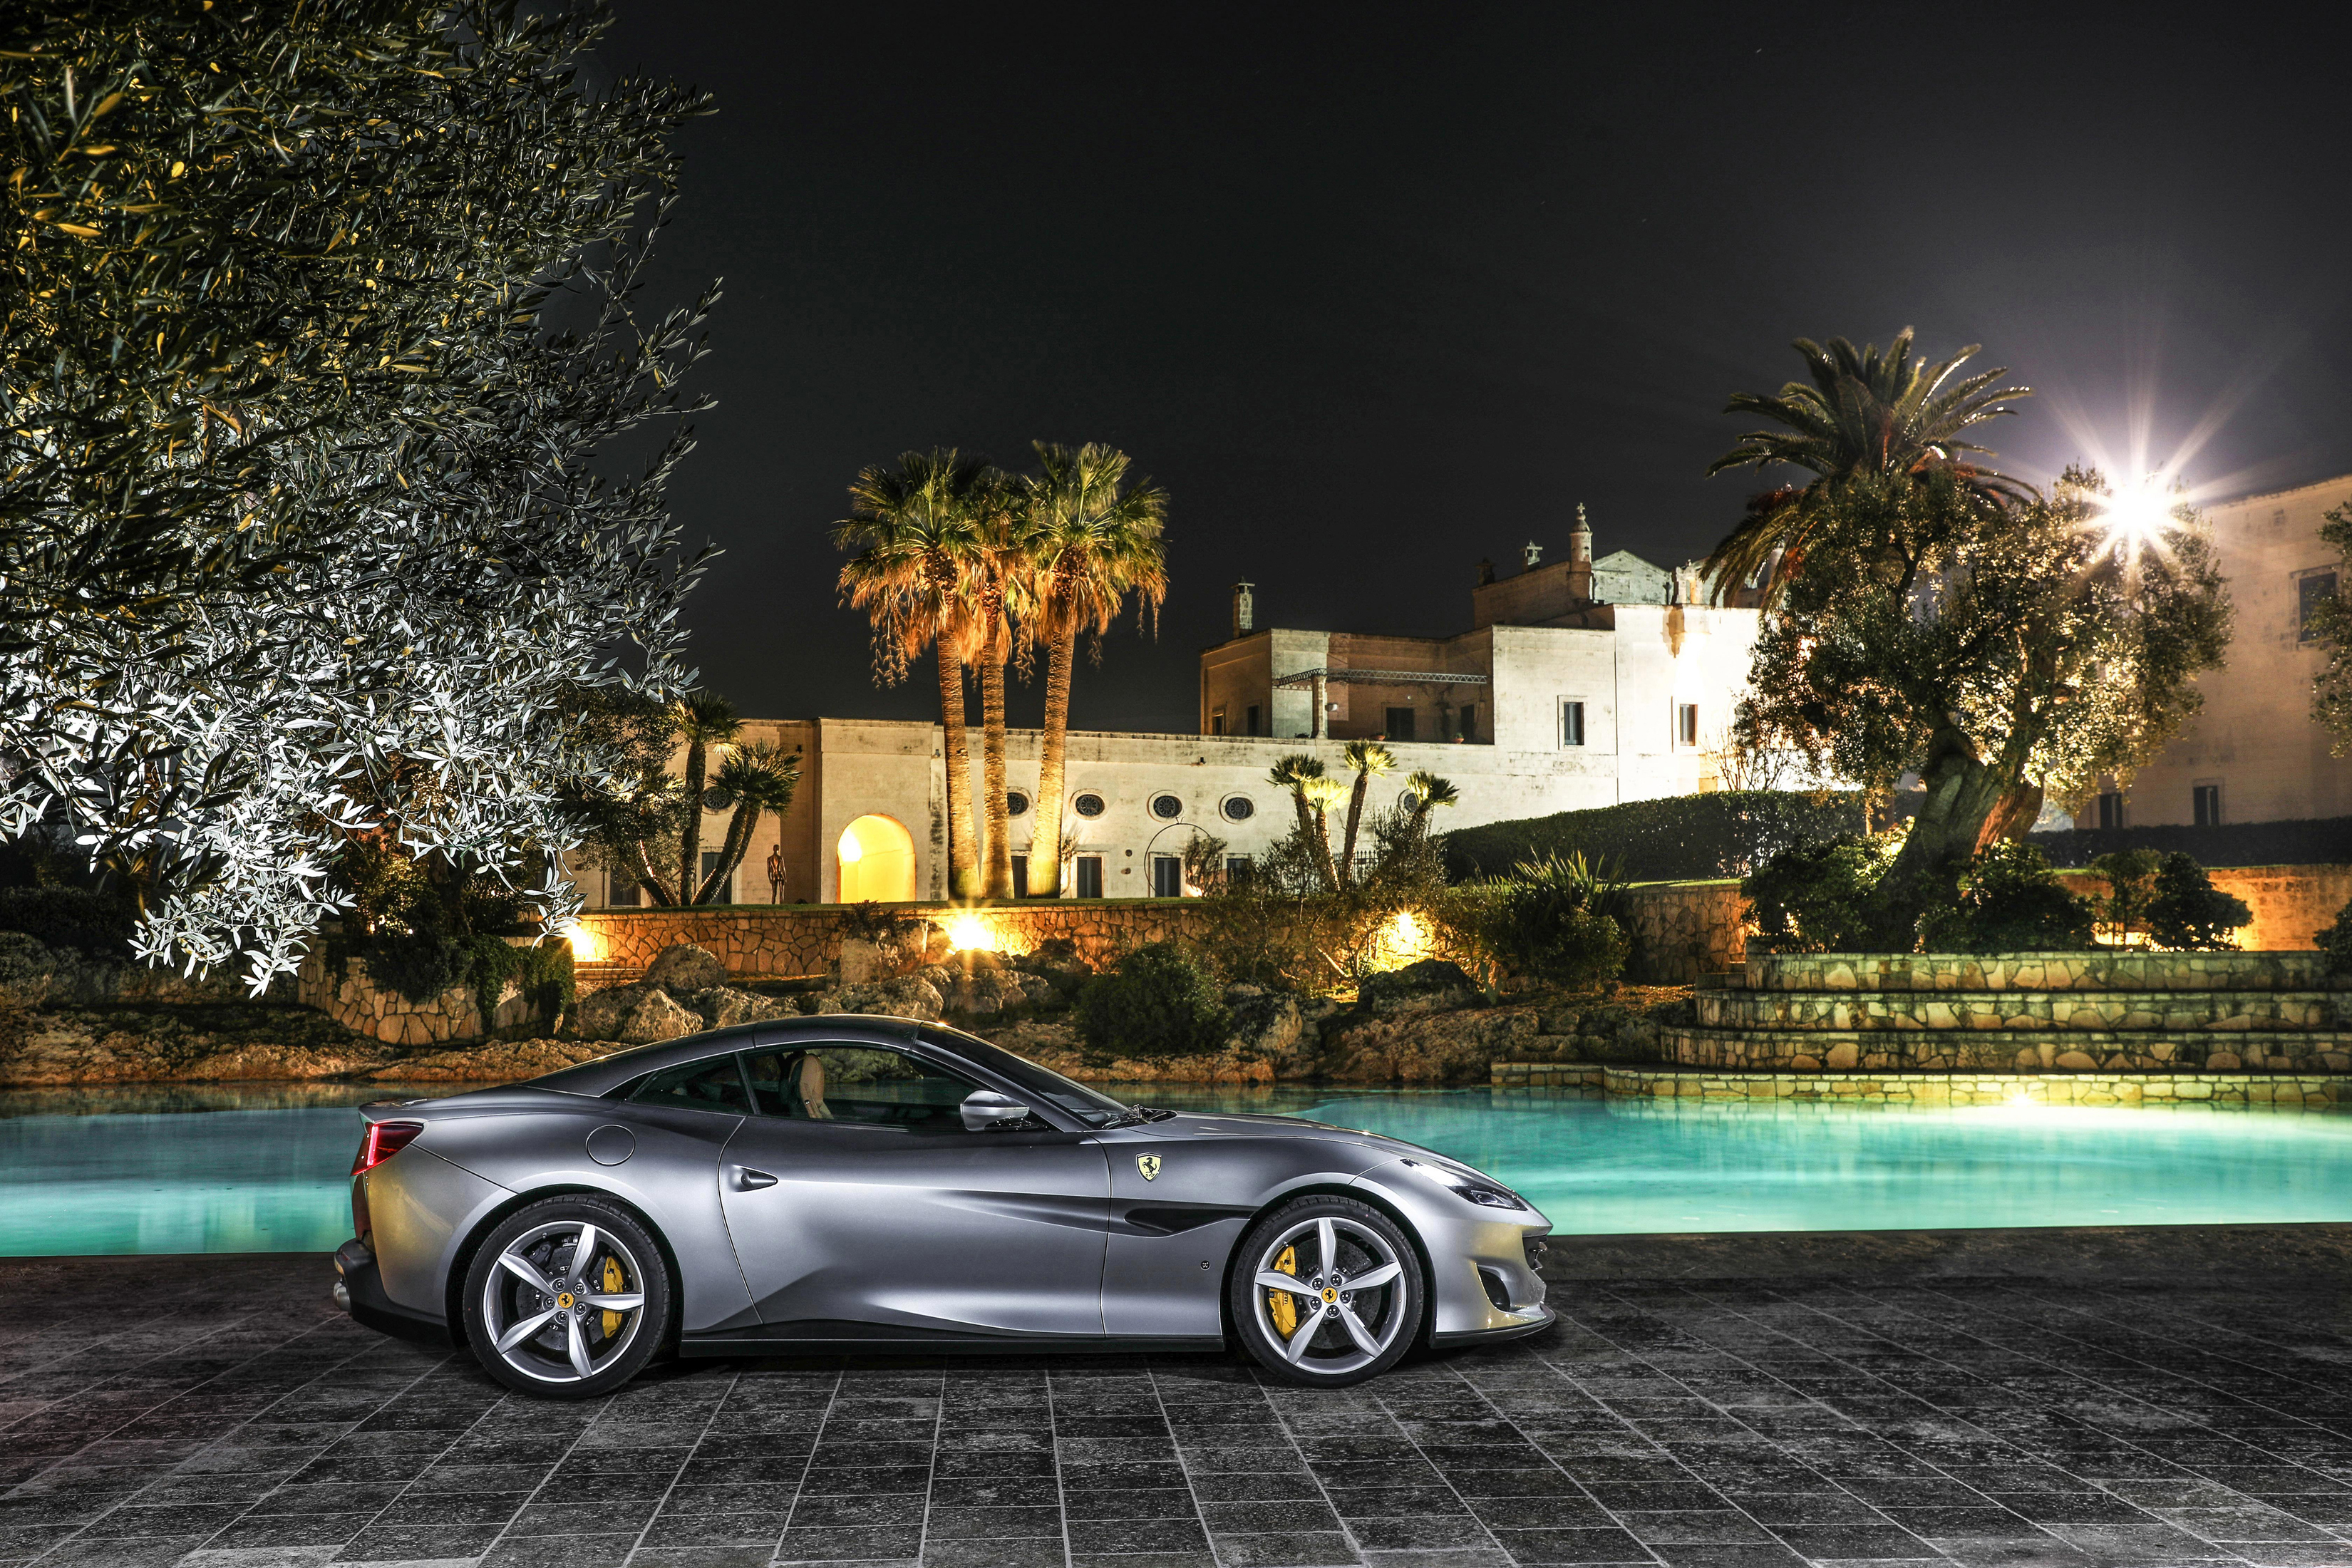 Ferrari Portofino HD Wallpaper Background Image Id